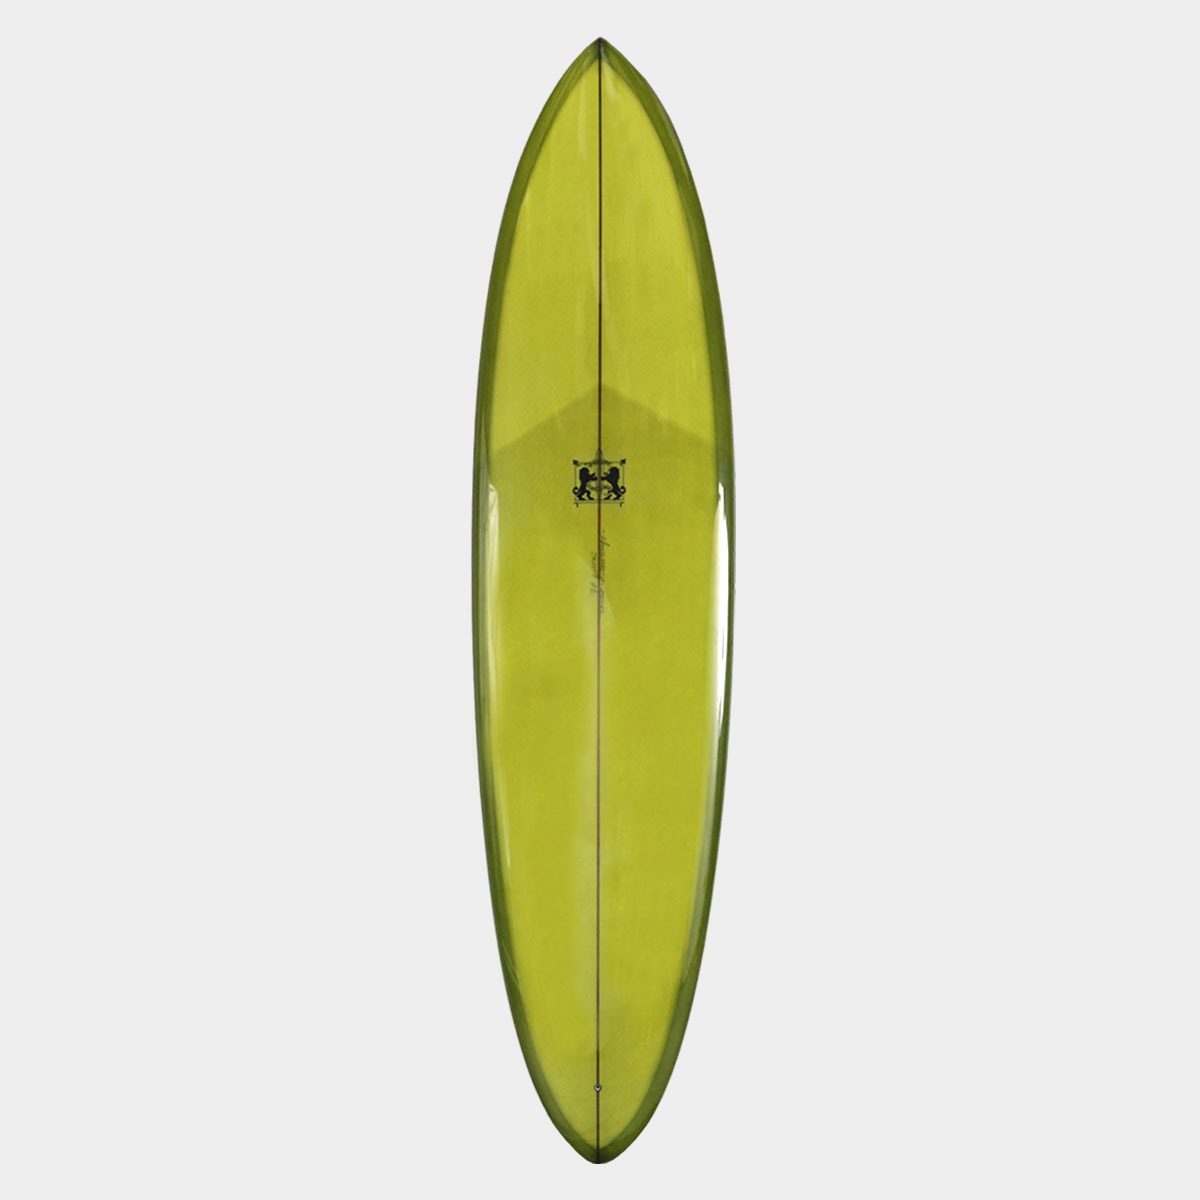 ラリーメイビル サーフボード マジック 7'6 サーフィン シングル ボックス surfboards LARRY MABILE MAGIC 7.6 SINGLE BOX 【jk2307】